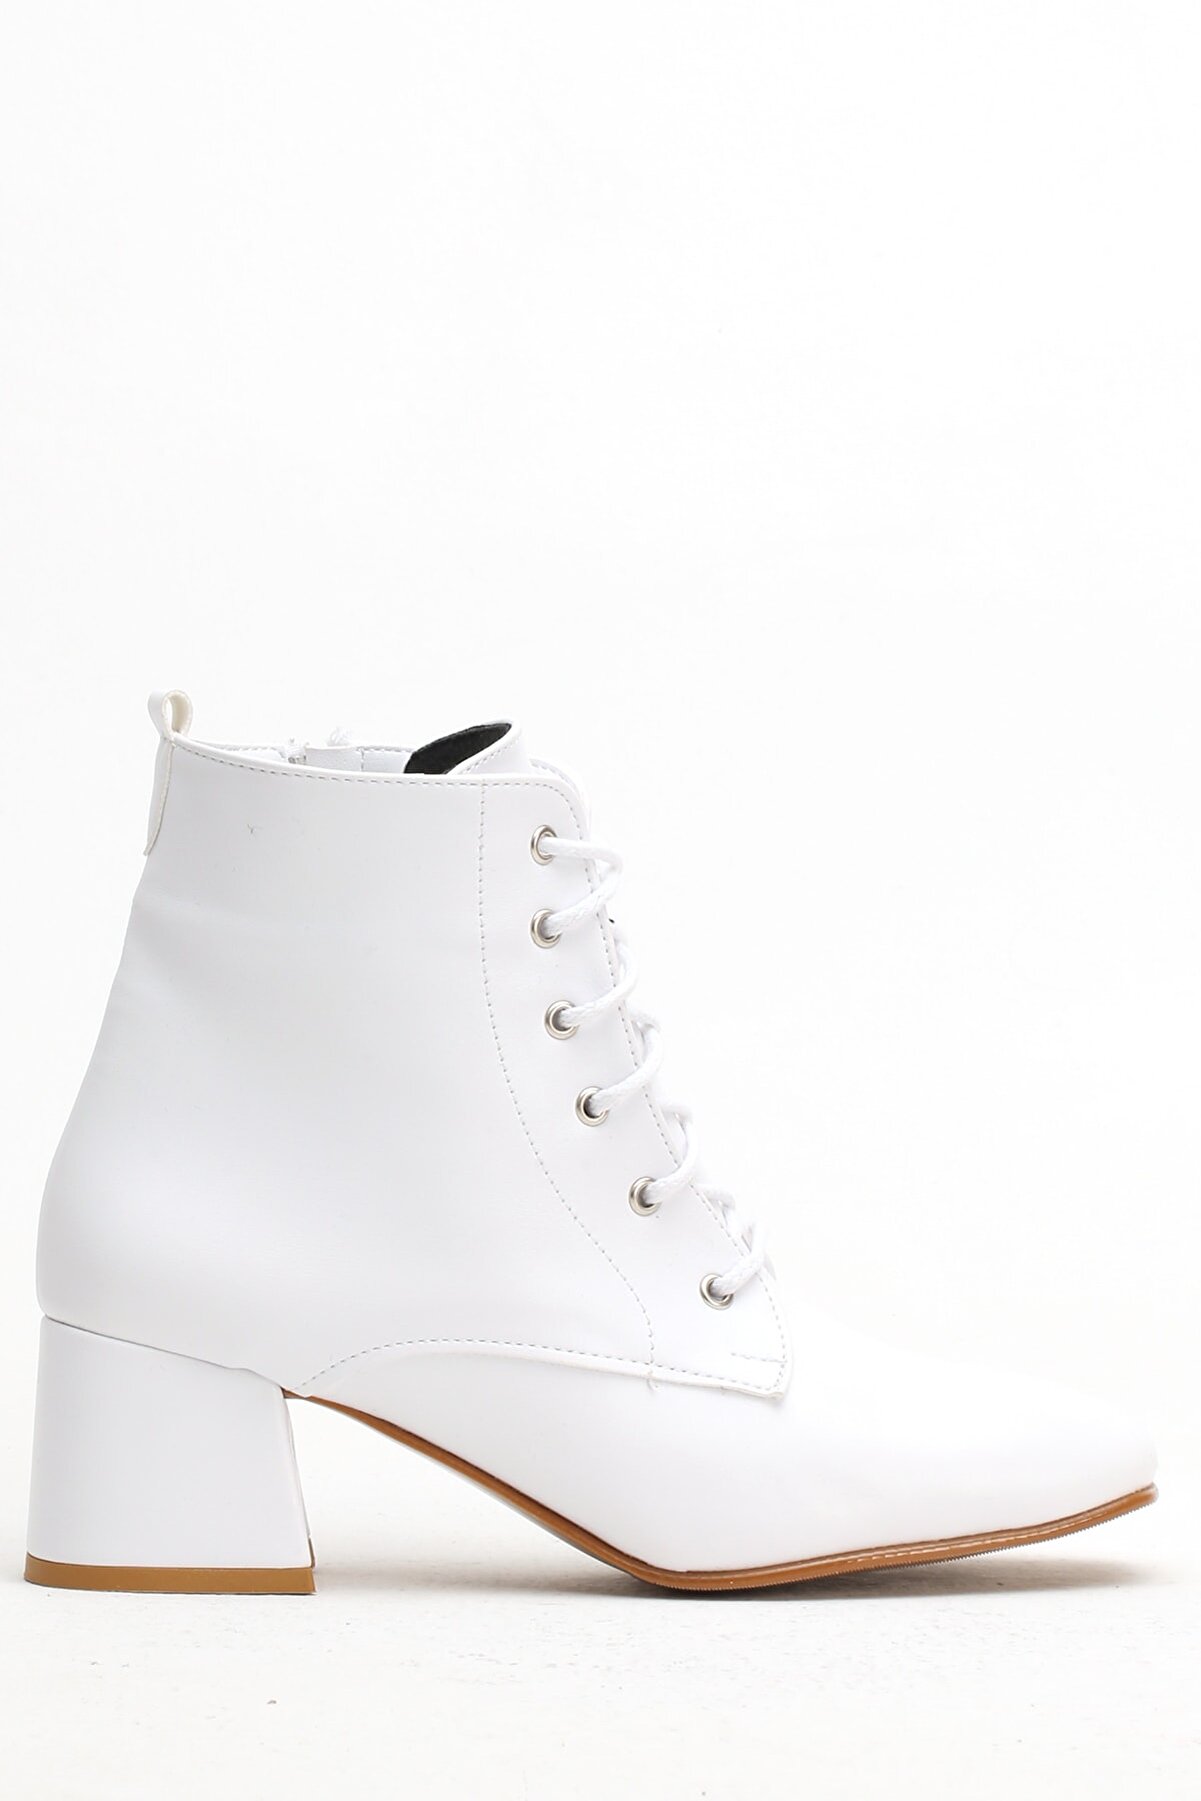 Ayakkabı Modası Beyaz Cilt  Kadın Bot 5007-20-000350